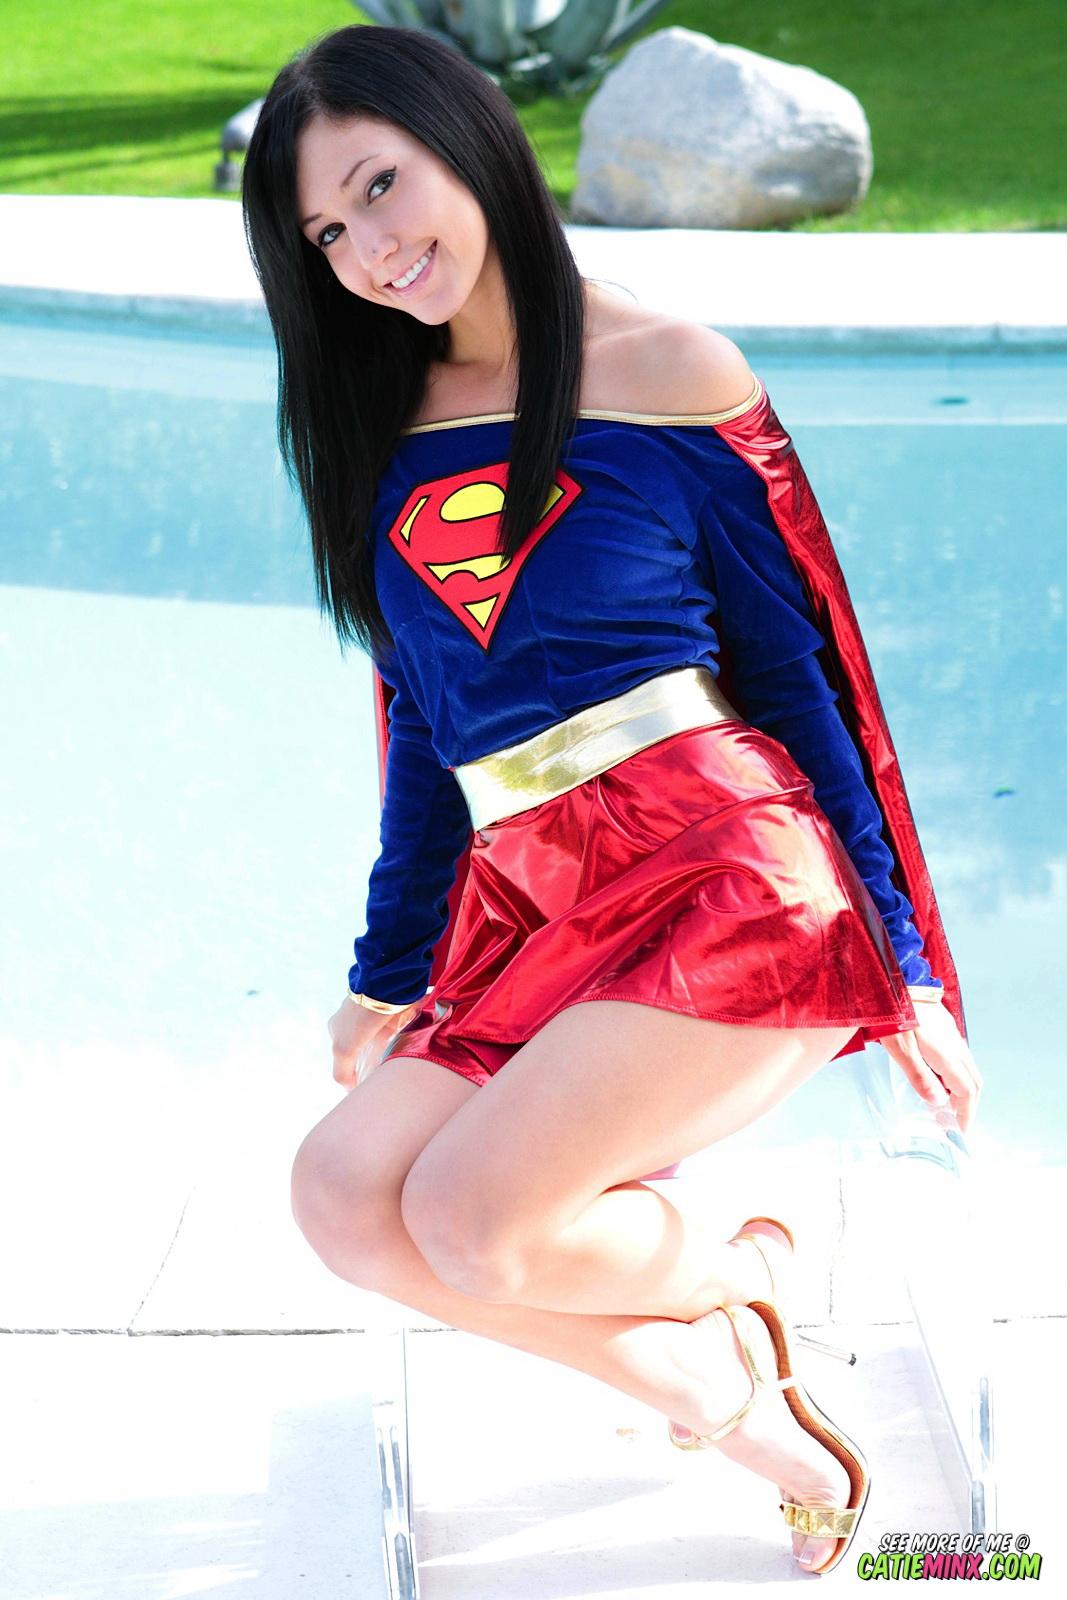 Catie minx, una nerd de modales suaves, revela sus poderes súper traviesos como supergirl
 #53722641